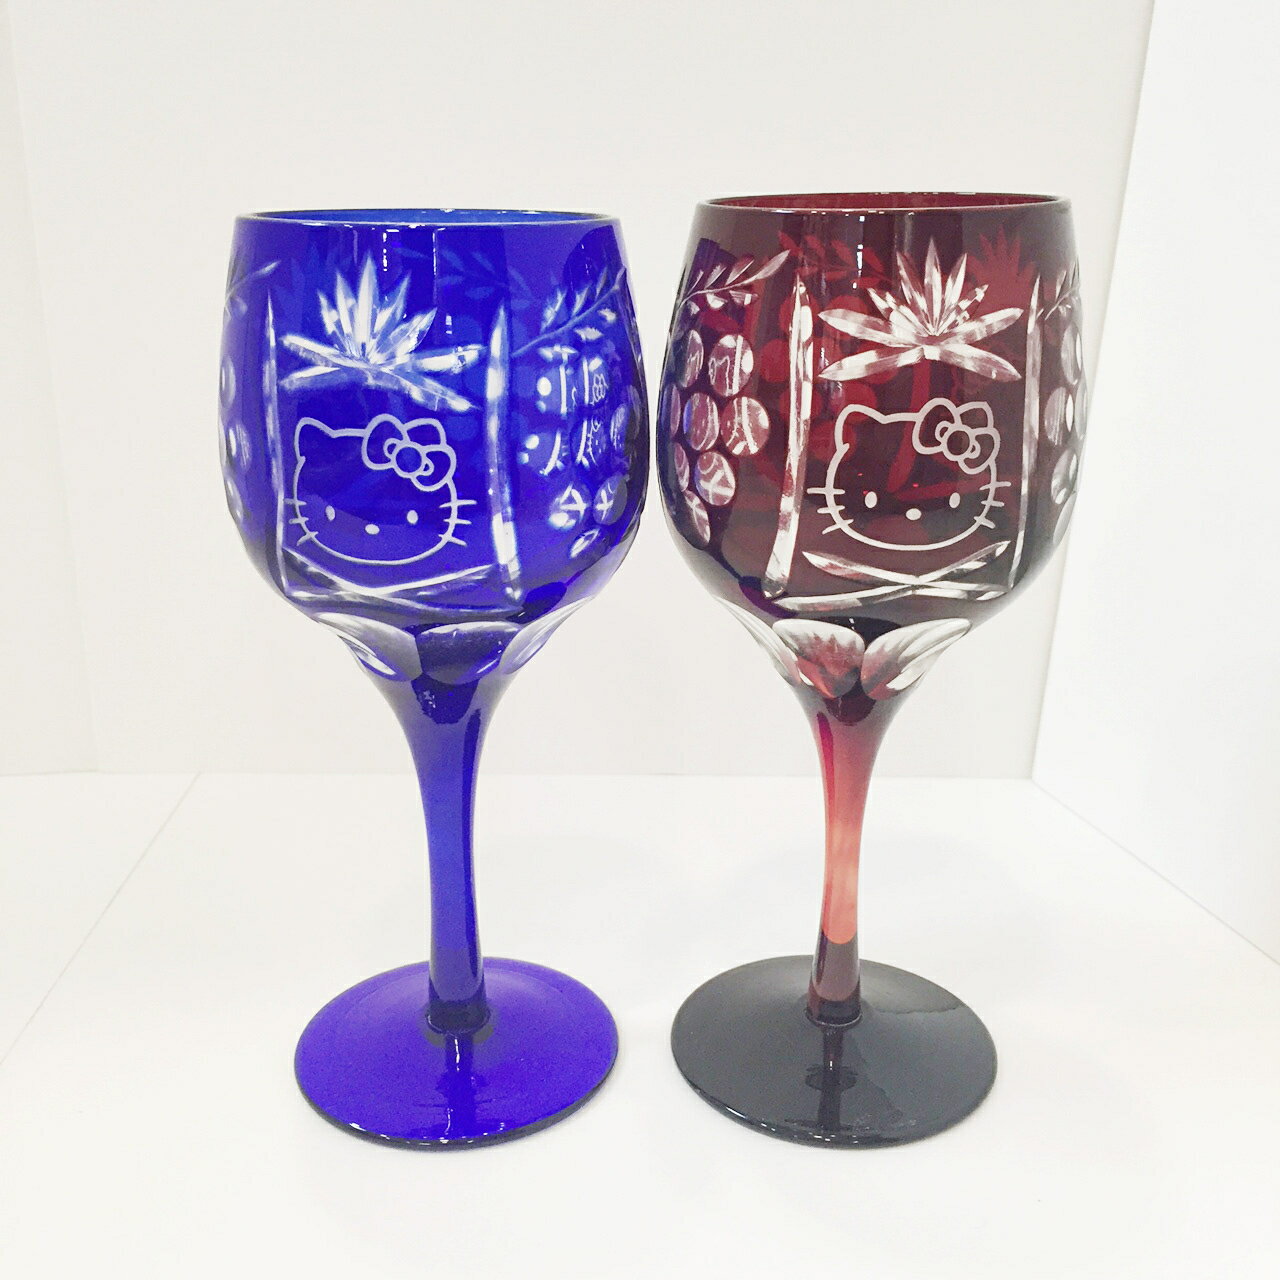 【震撼精品百貨】Hello Kitty 凱蒂貓 玻璃切割高級紅酒杯-紅/藍色一組 震撼日式精品百貨